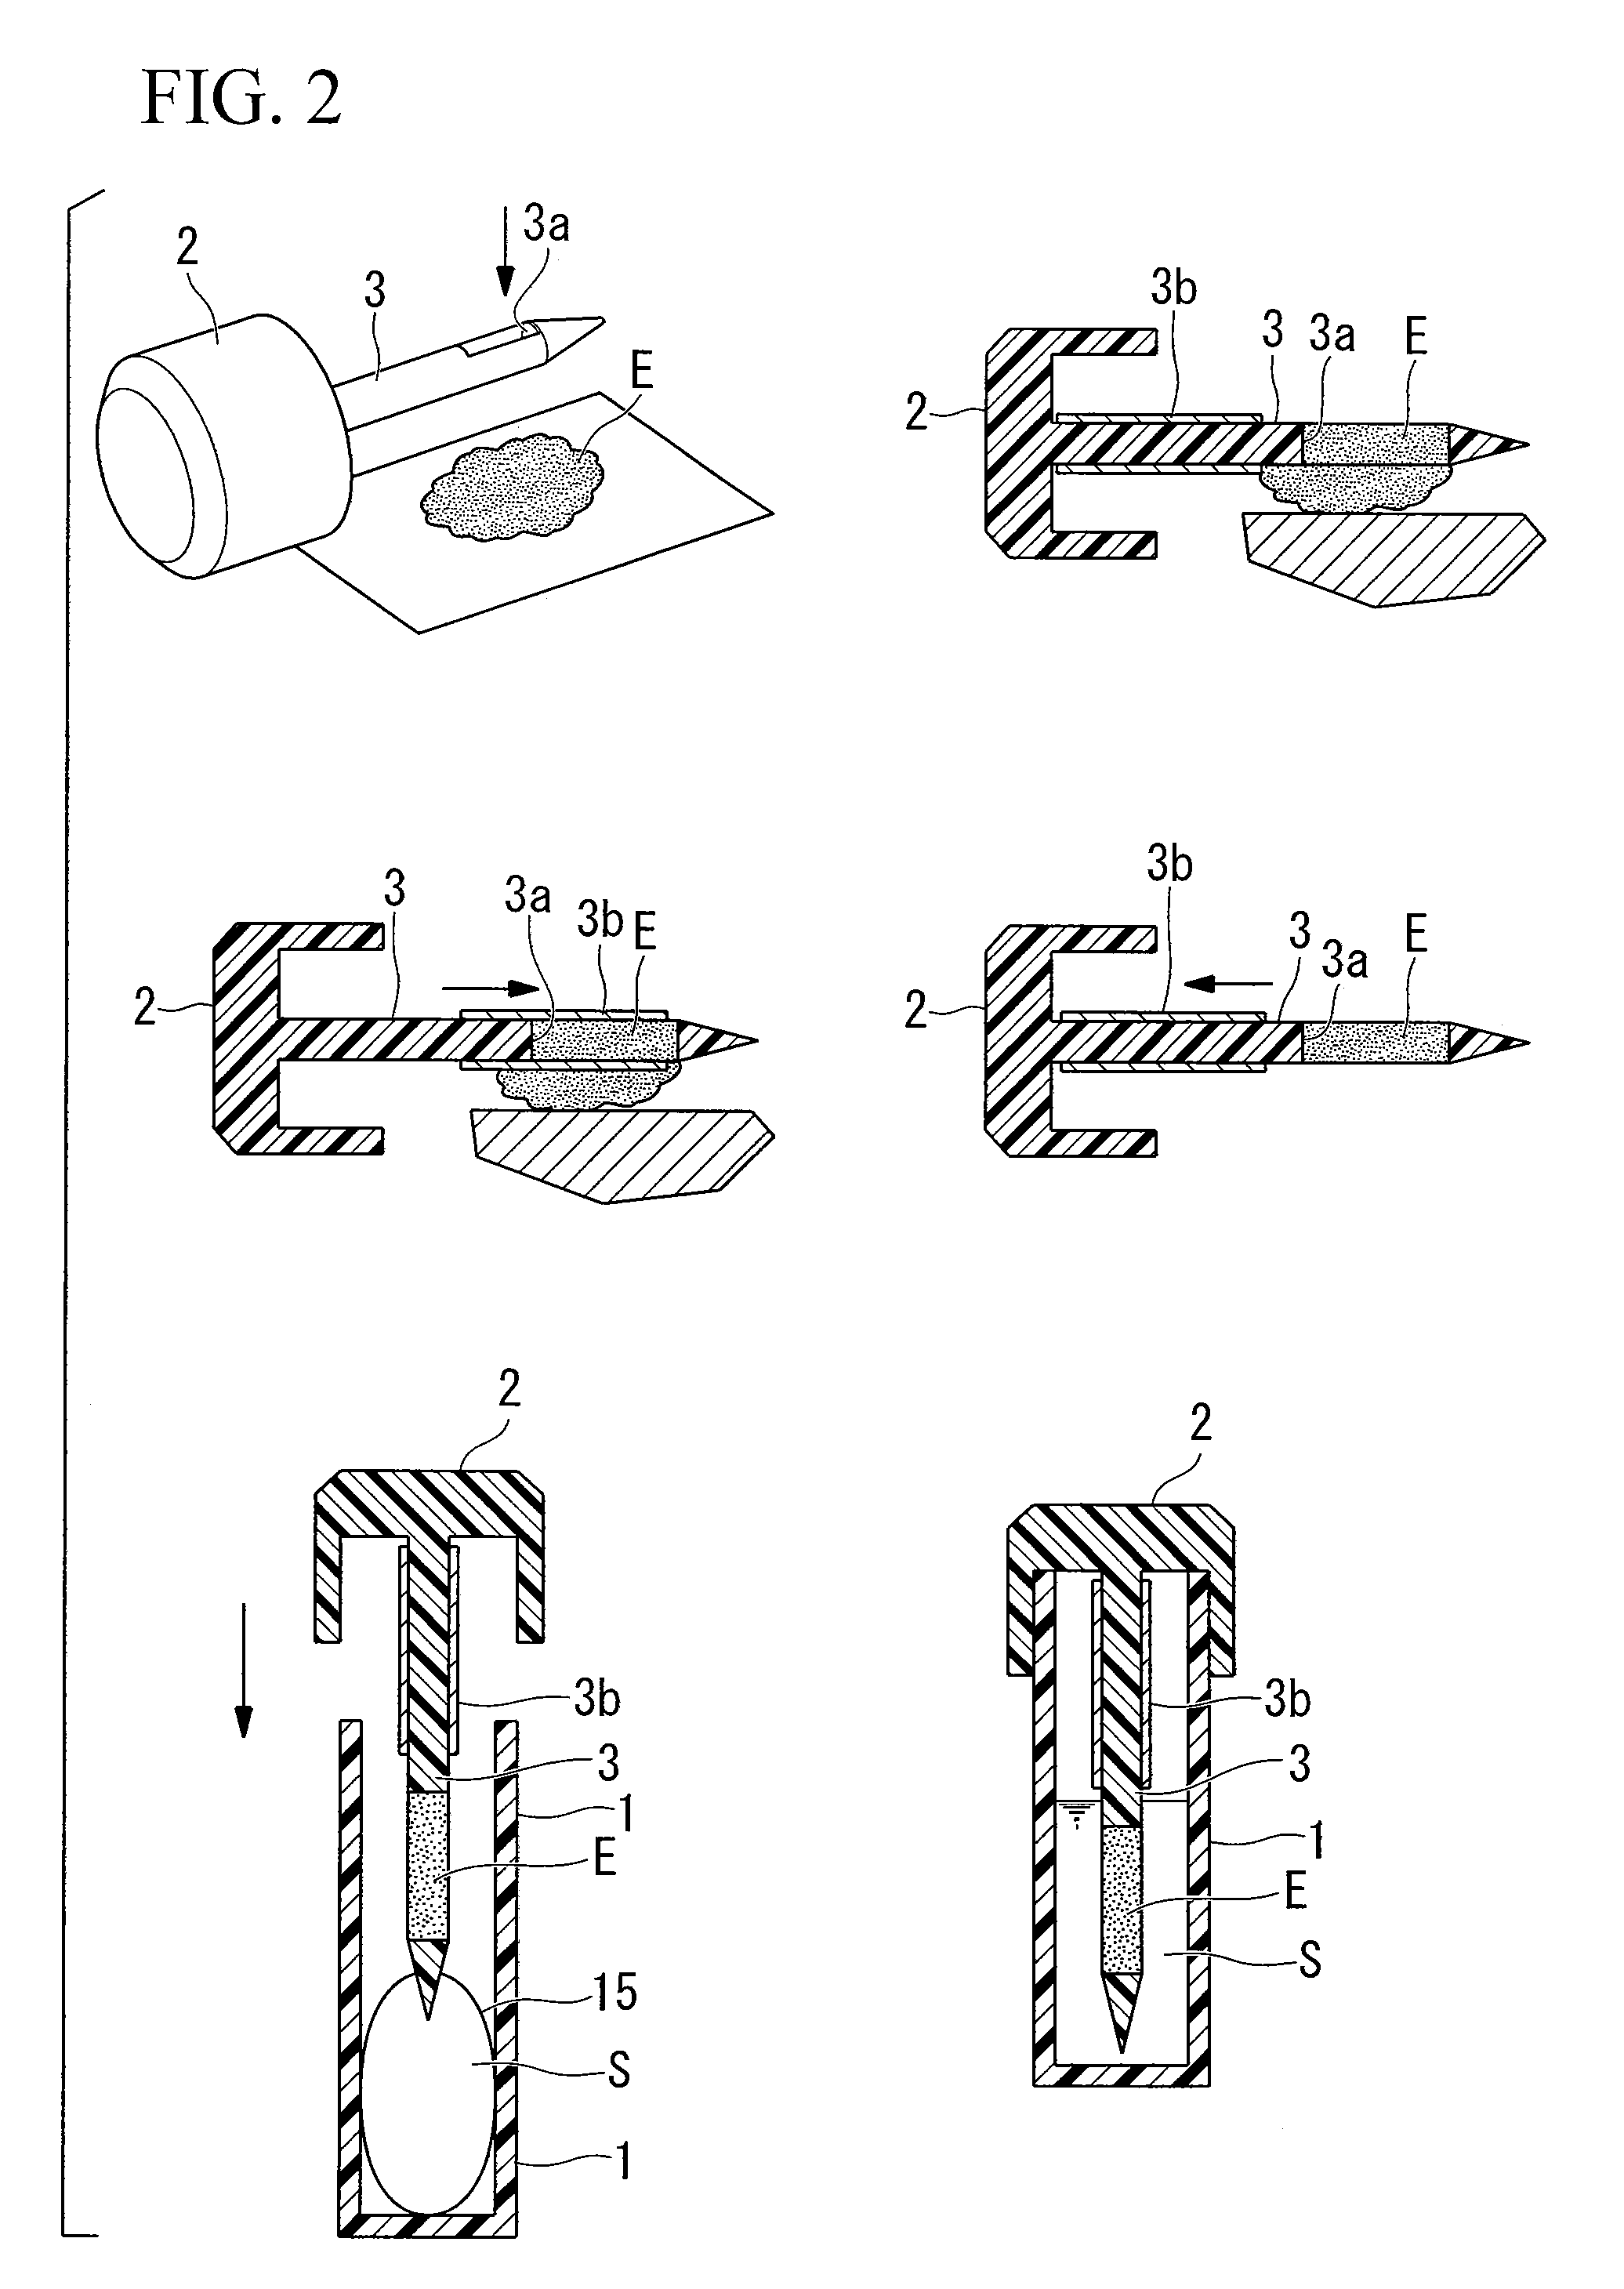 Method for preparing stool sample, solution for preparing stool sample, and kit for collecting stool